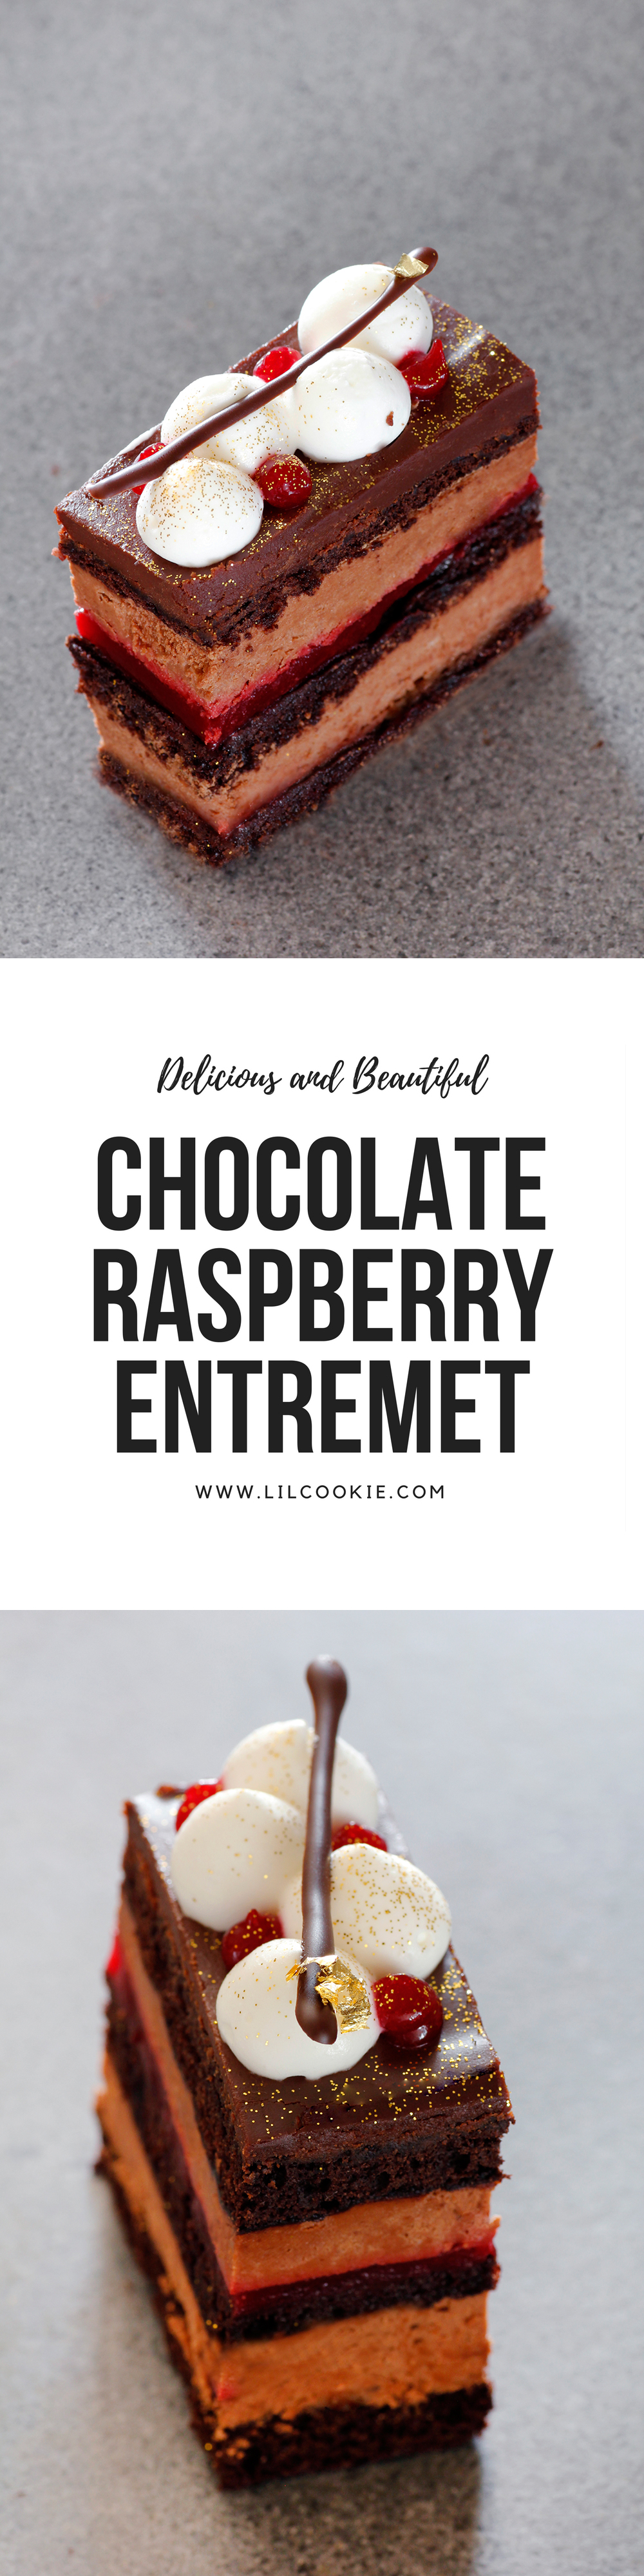 Chocolate Raspberry Entremet